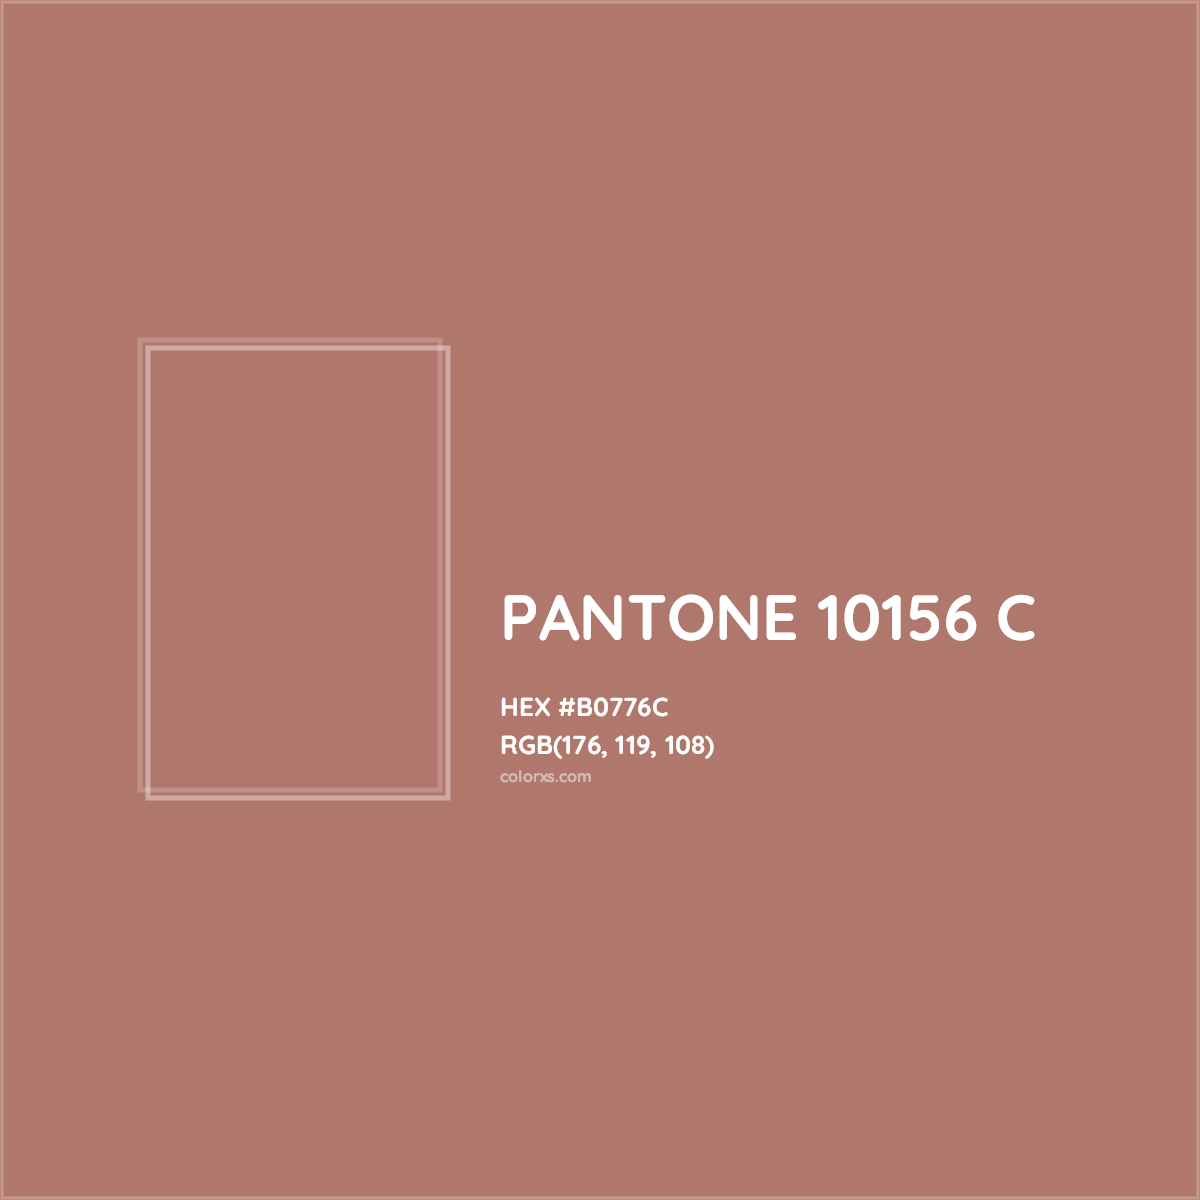 HEX #B0776C PANTONE 10156 C CMS Pantone PMS - Color Code